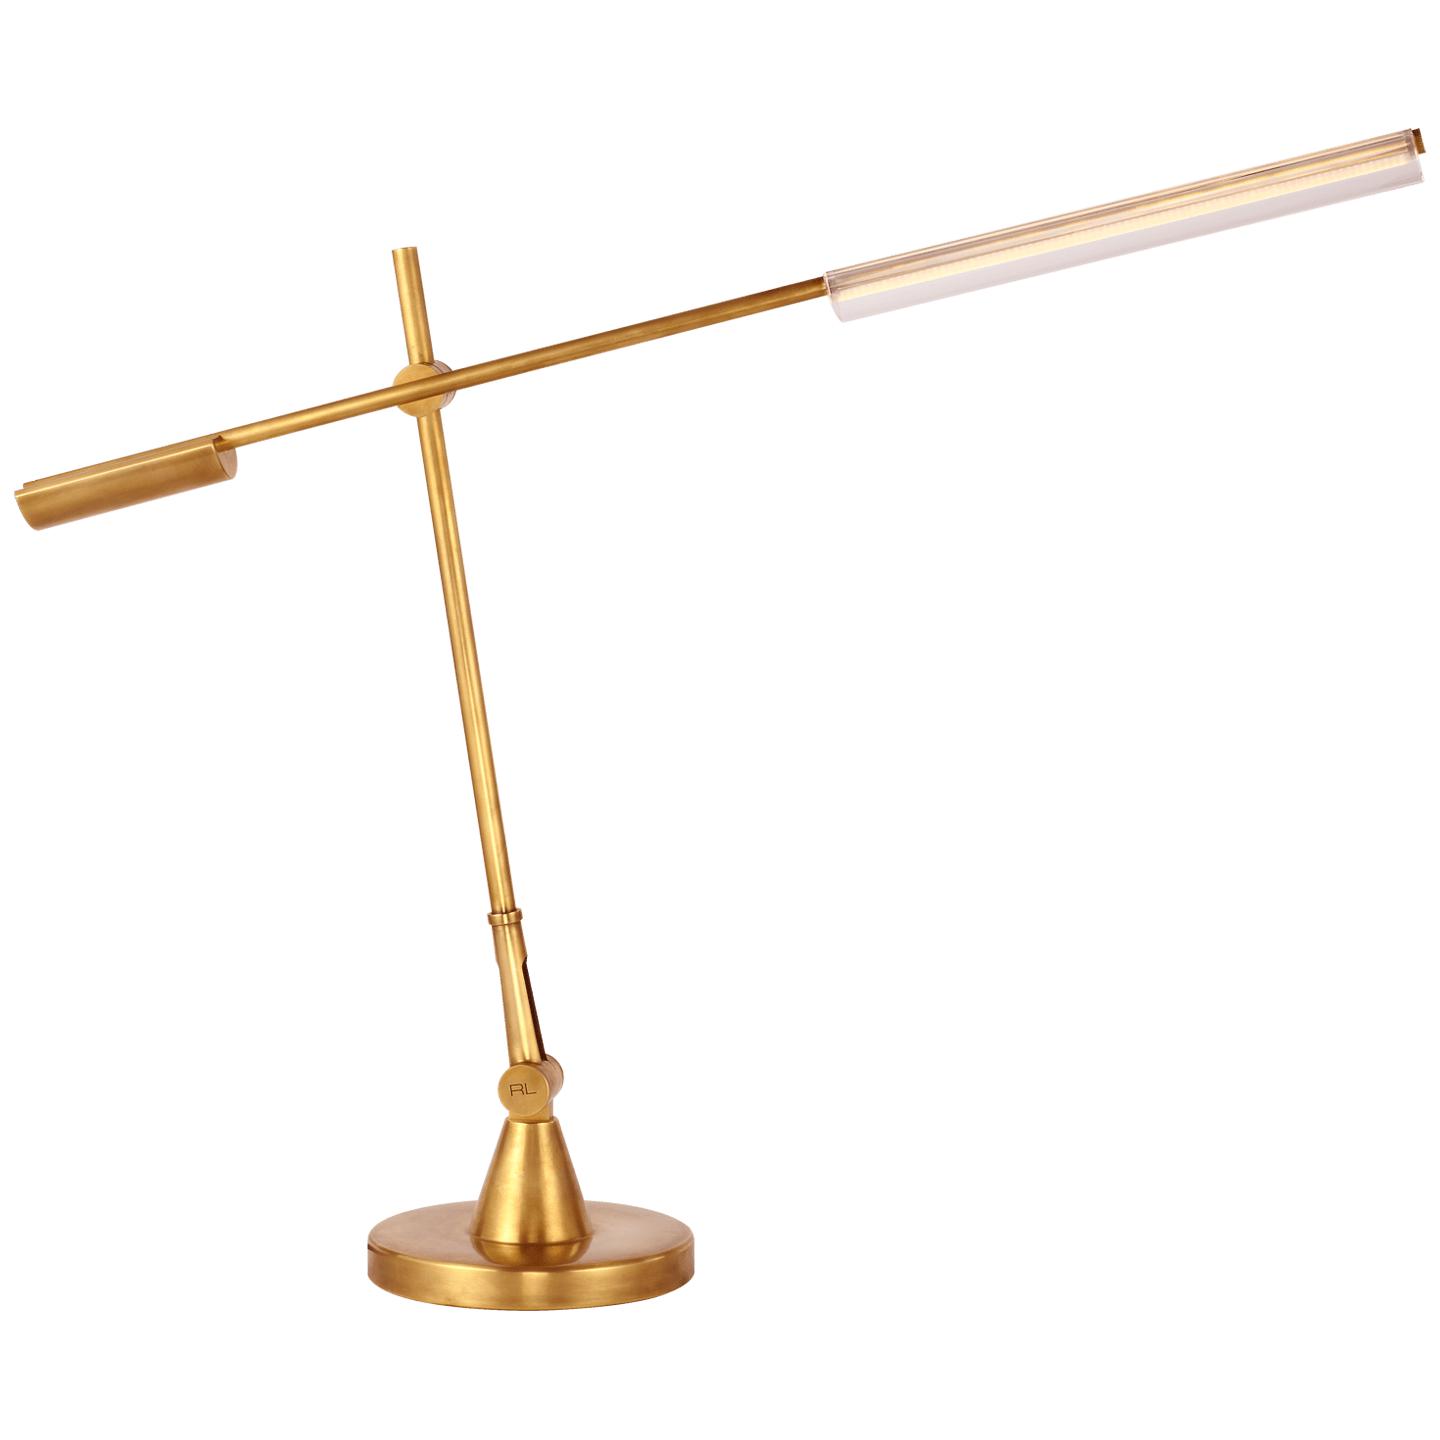 Купить Настольная лампа Daley Adjustable Desk Lamp в интернет-магазине roooms.ru